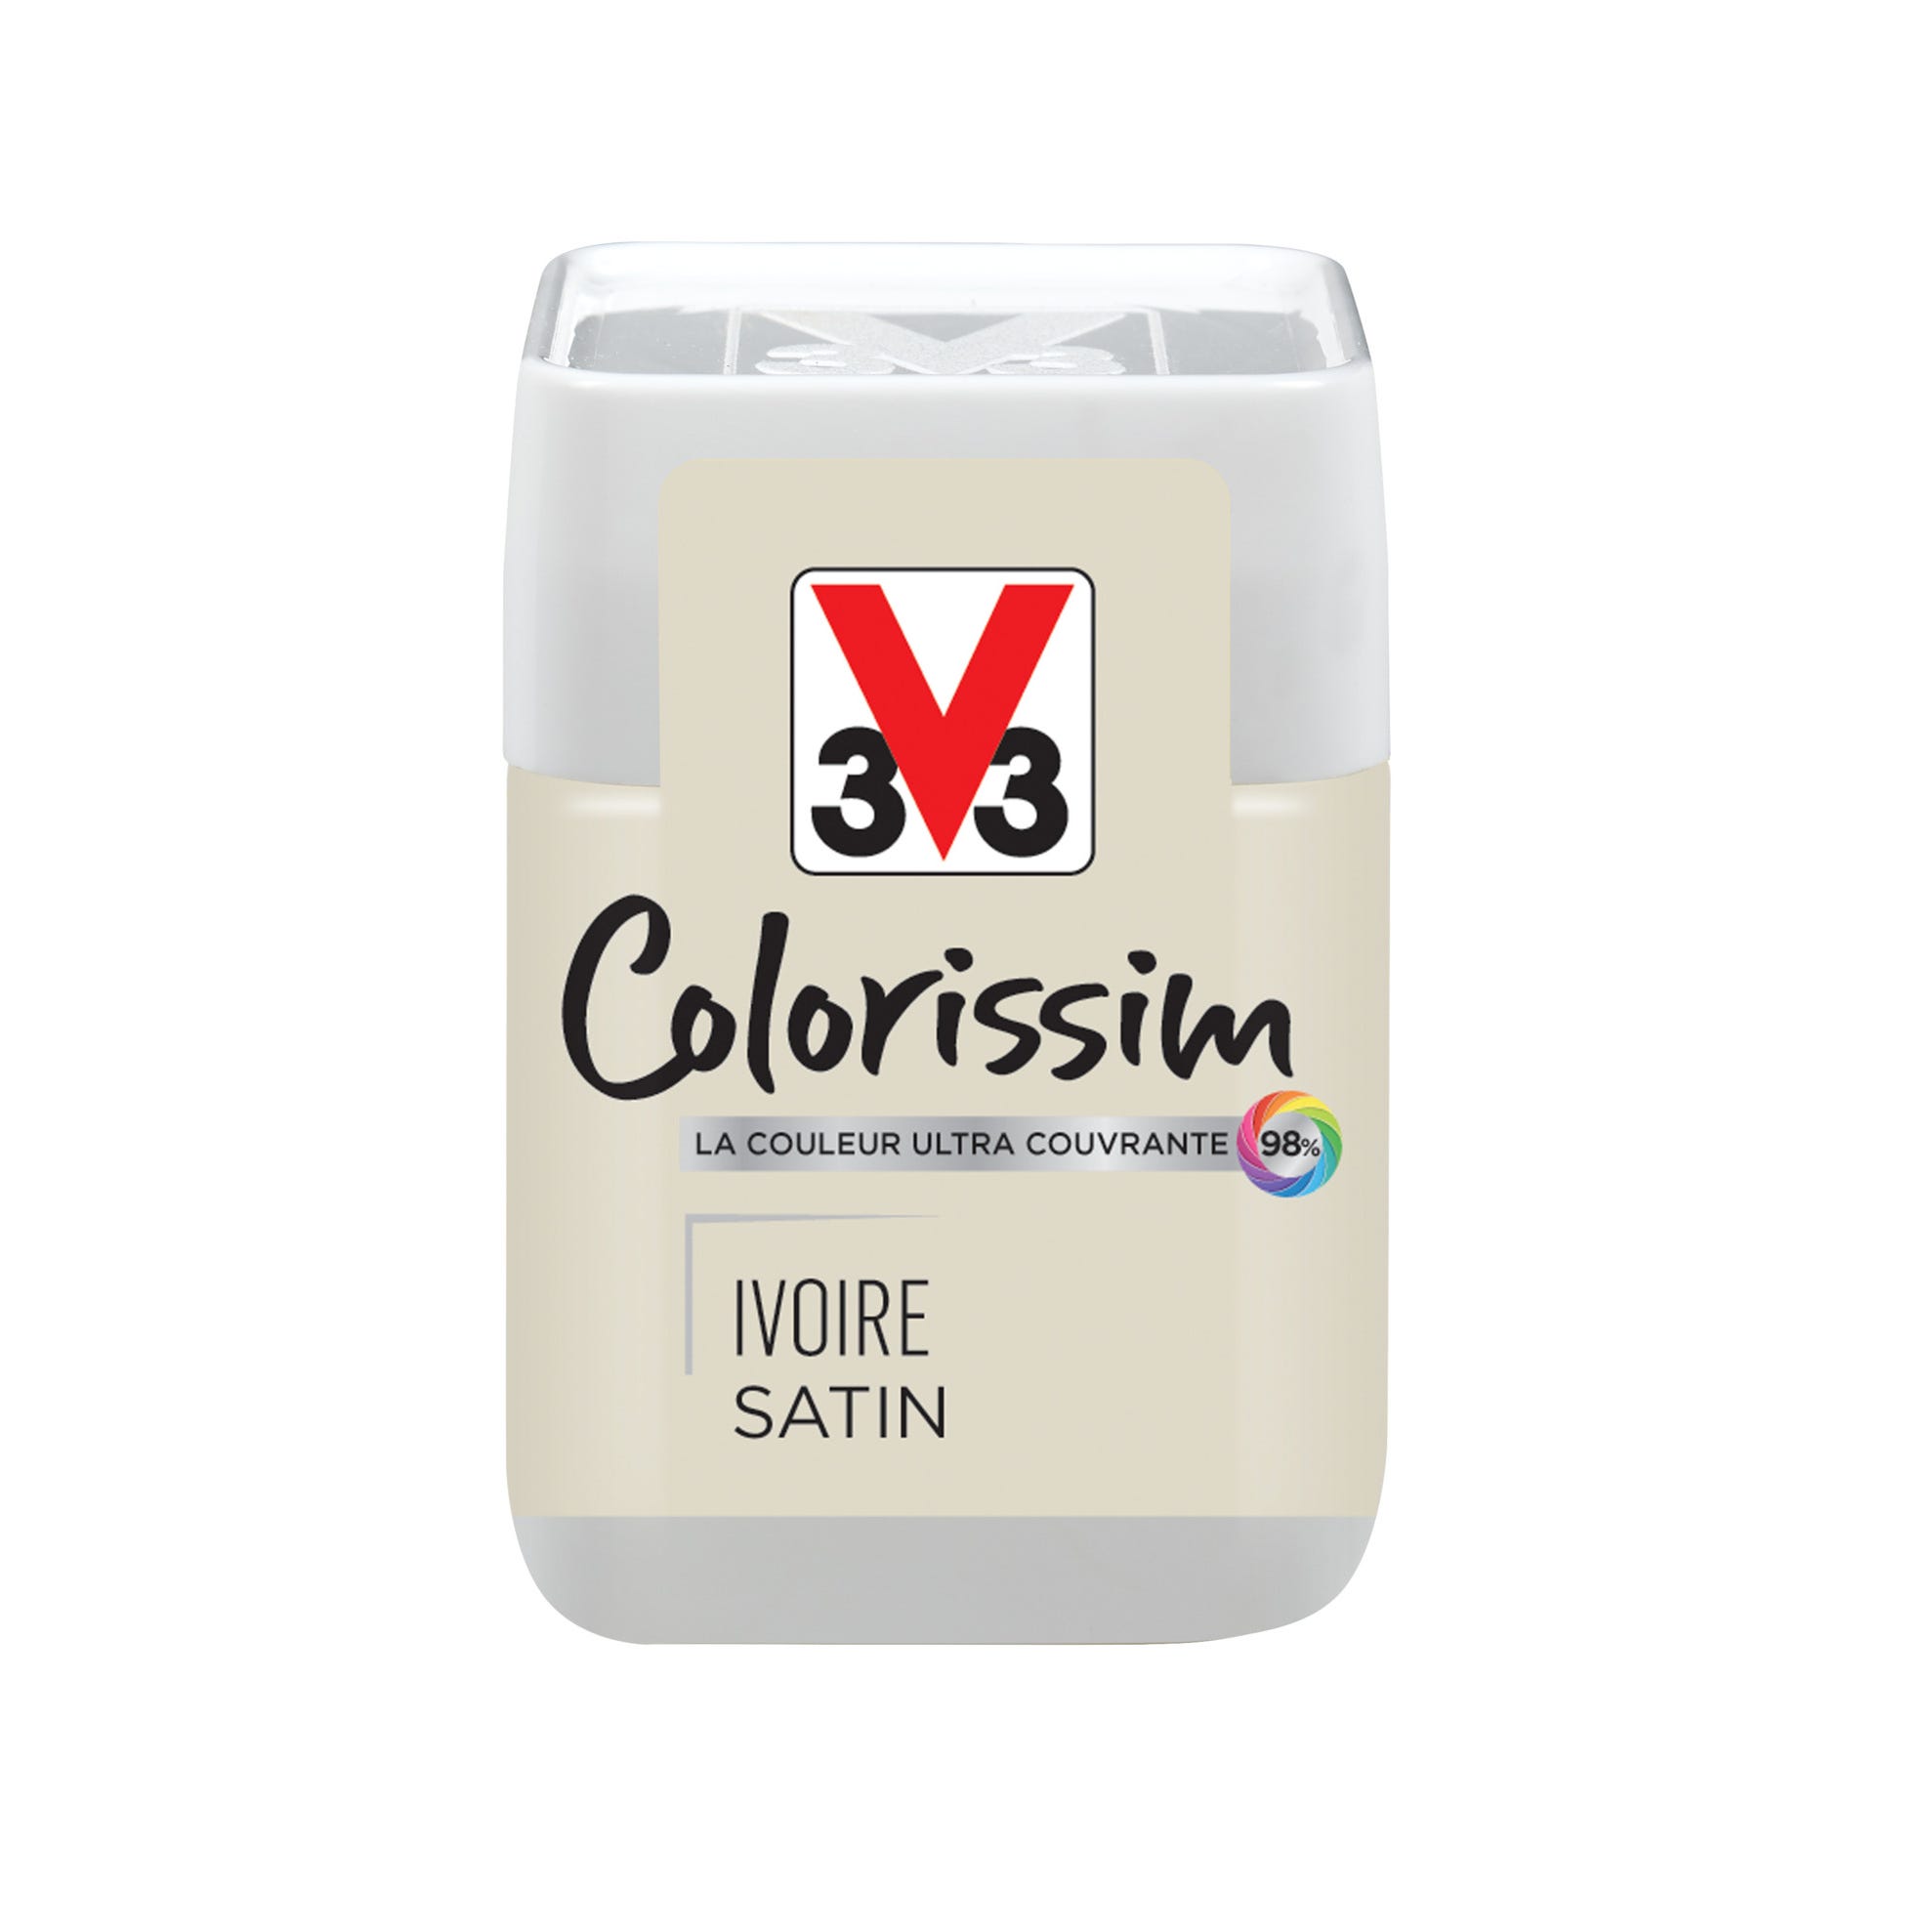 Peinture intérieure multi-supports testeur acrylique satin ivoire 75 ml - V33 COLORISSIM 0